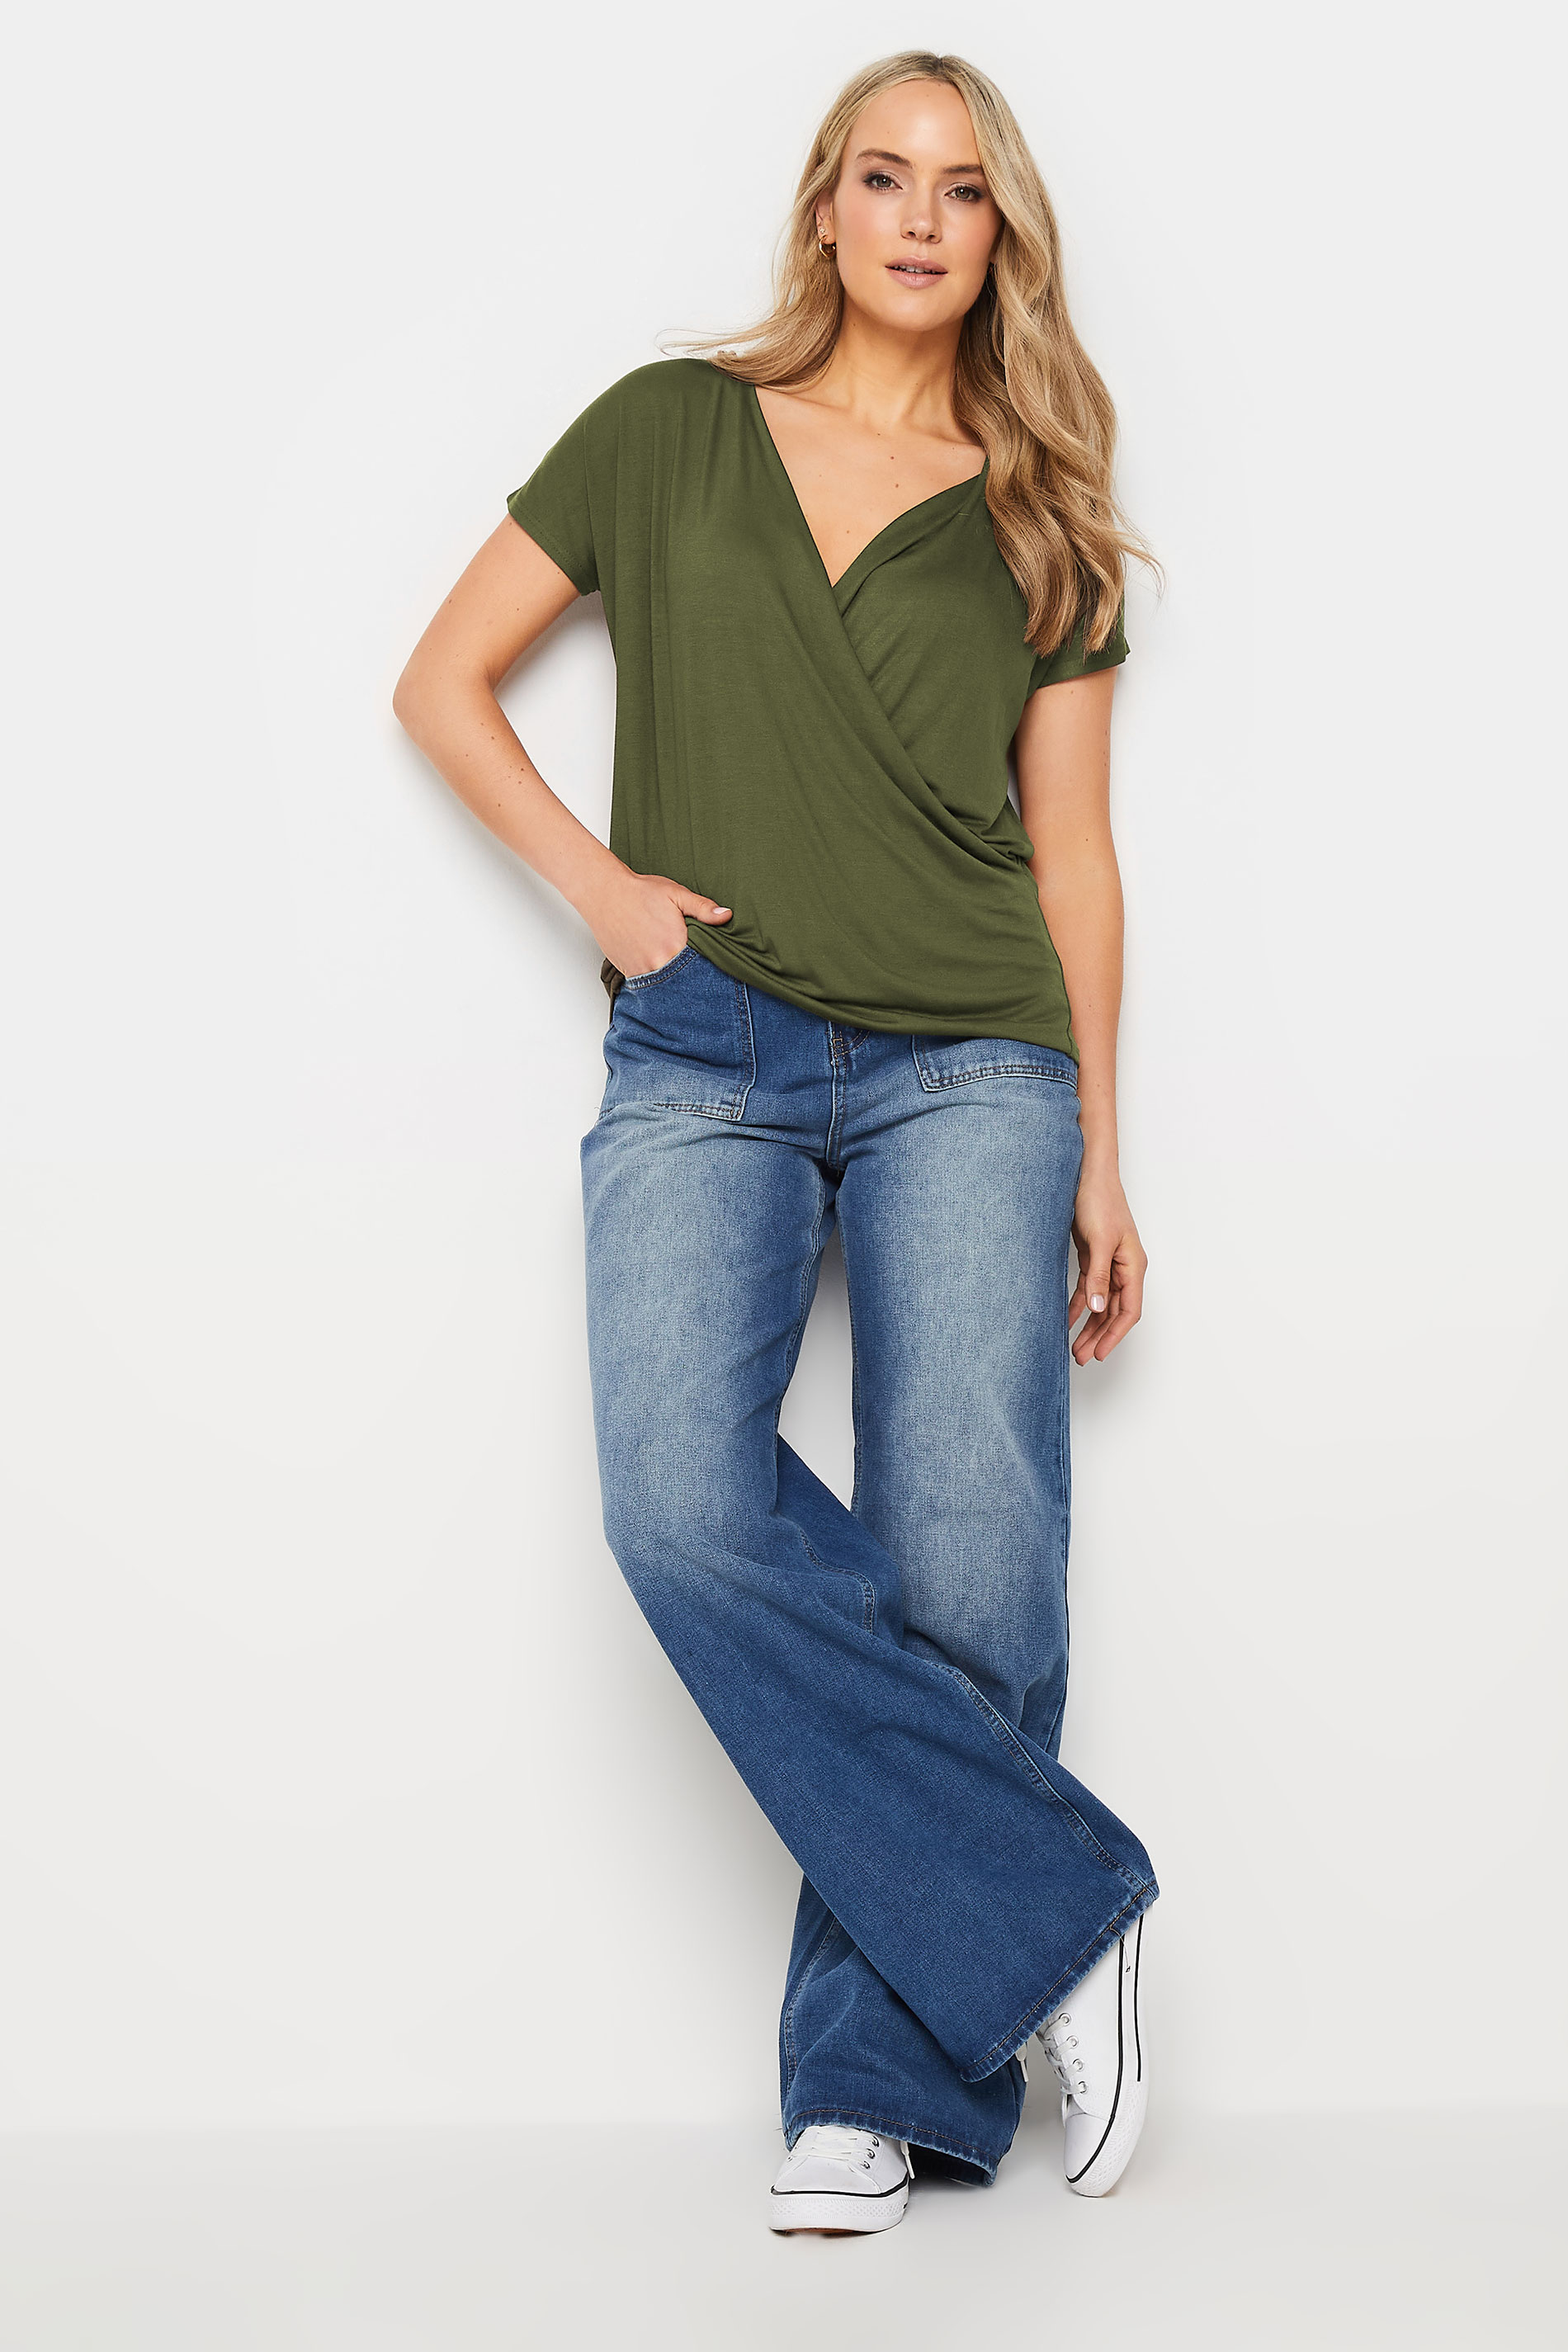 LTS Tall Women's Khaki Green Short Sleeve Wrap Top | Long Tall Sally 2